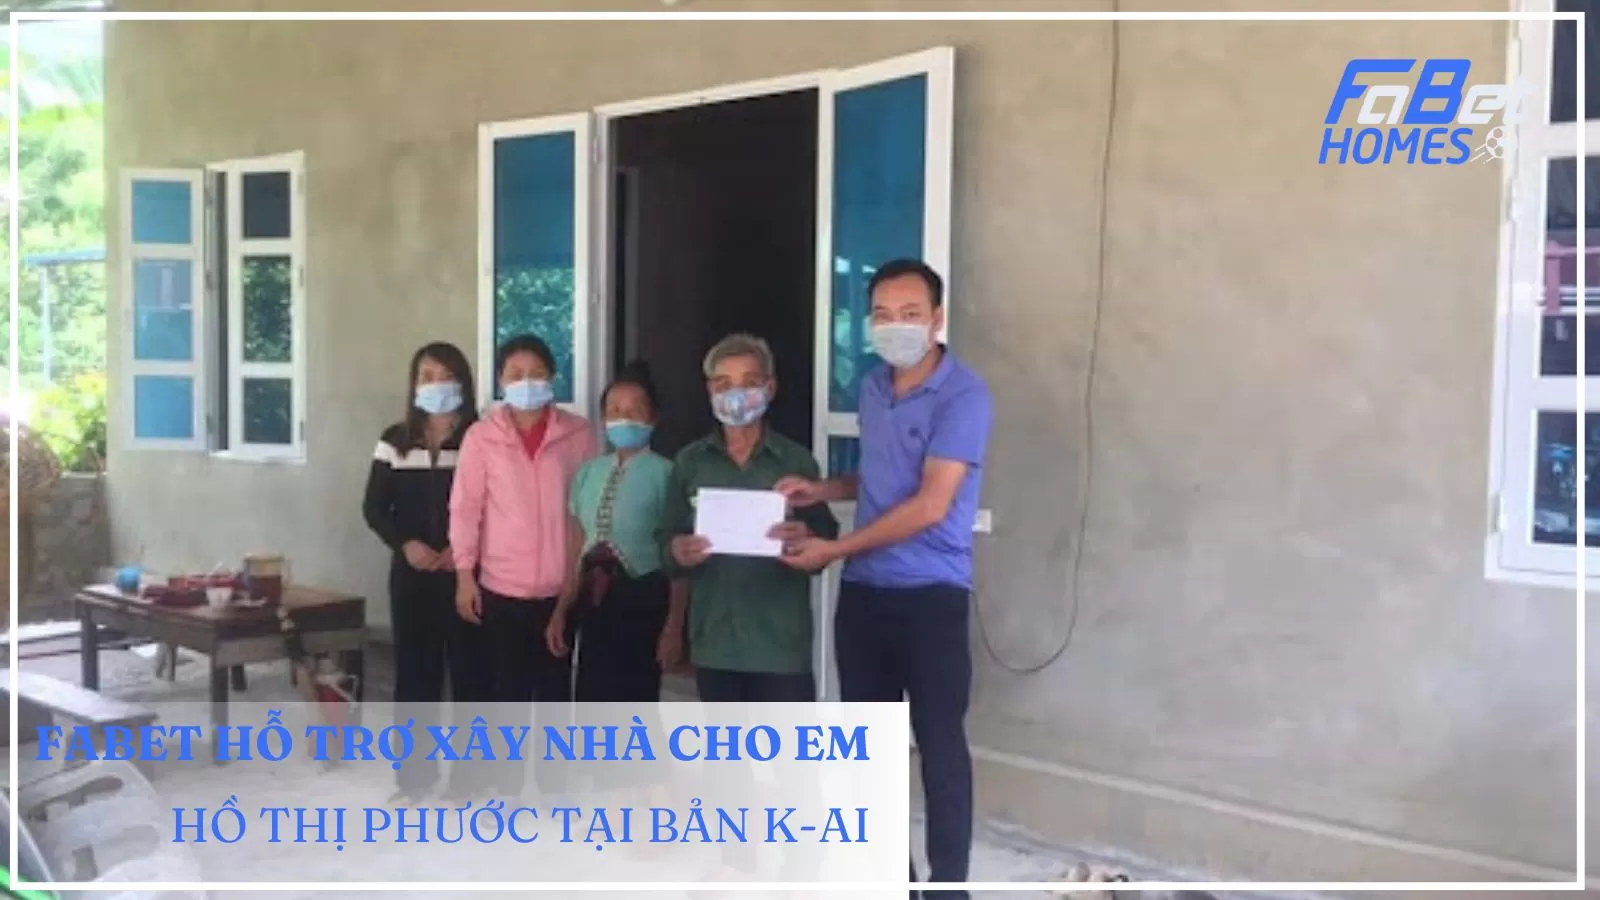 Bàn giao ngôi nhà cho em Hồ Thị Phước